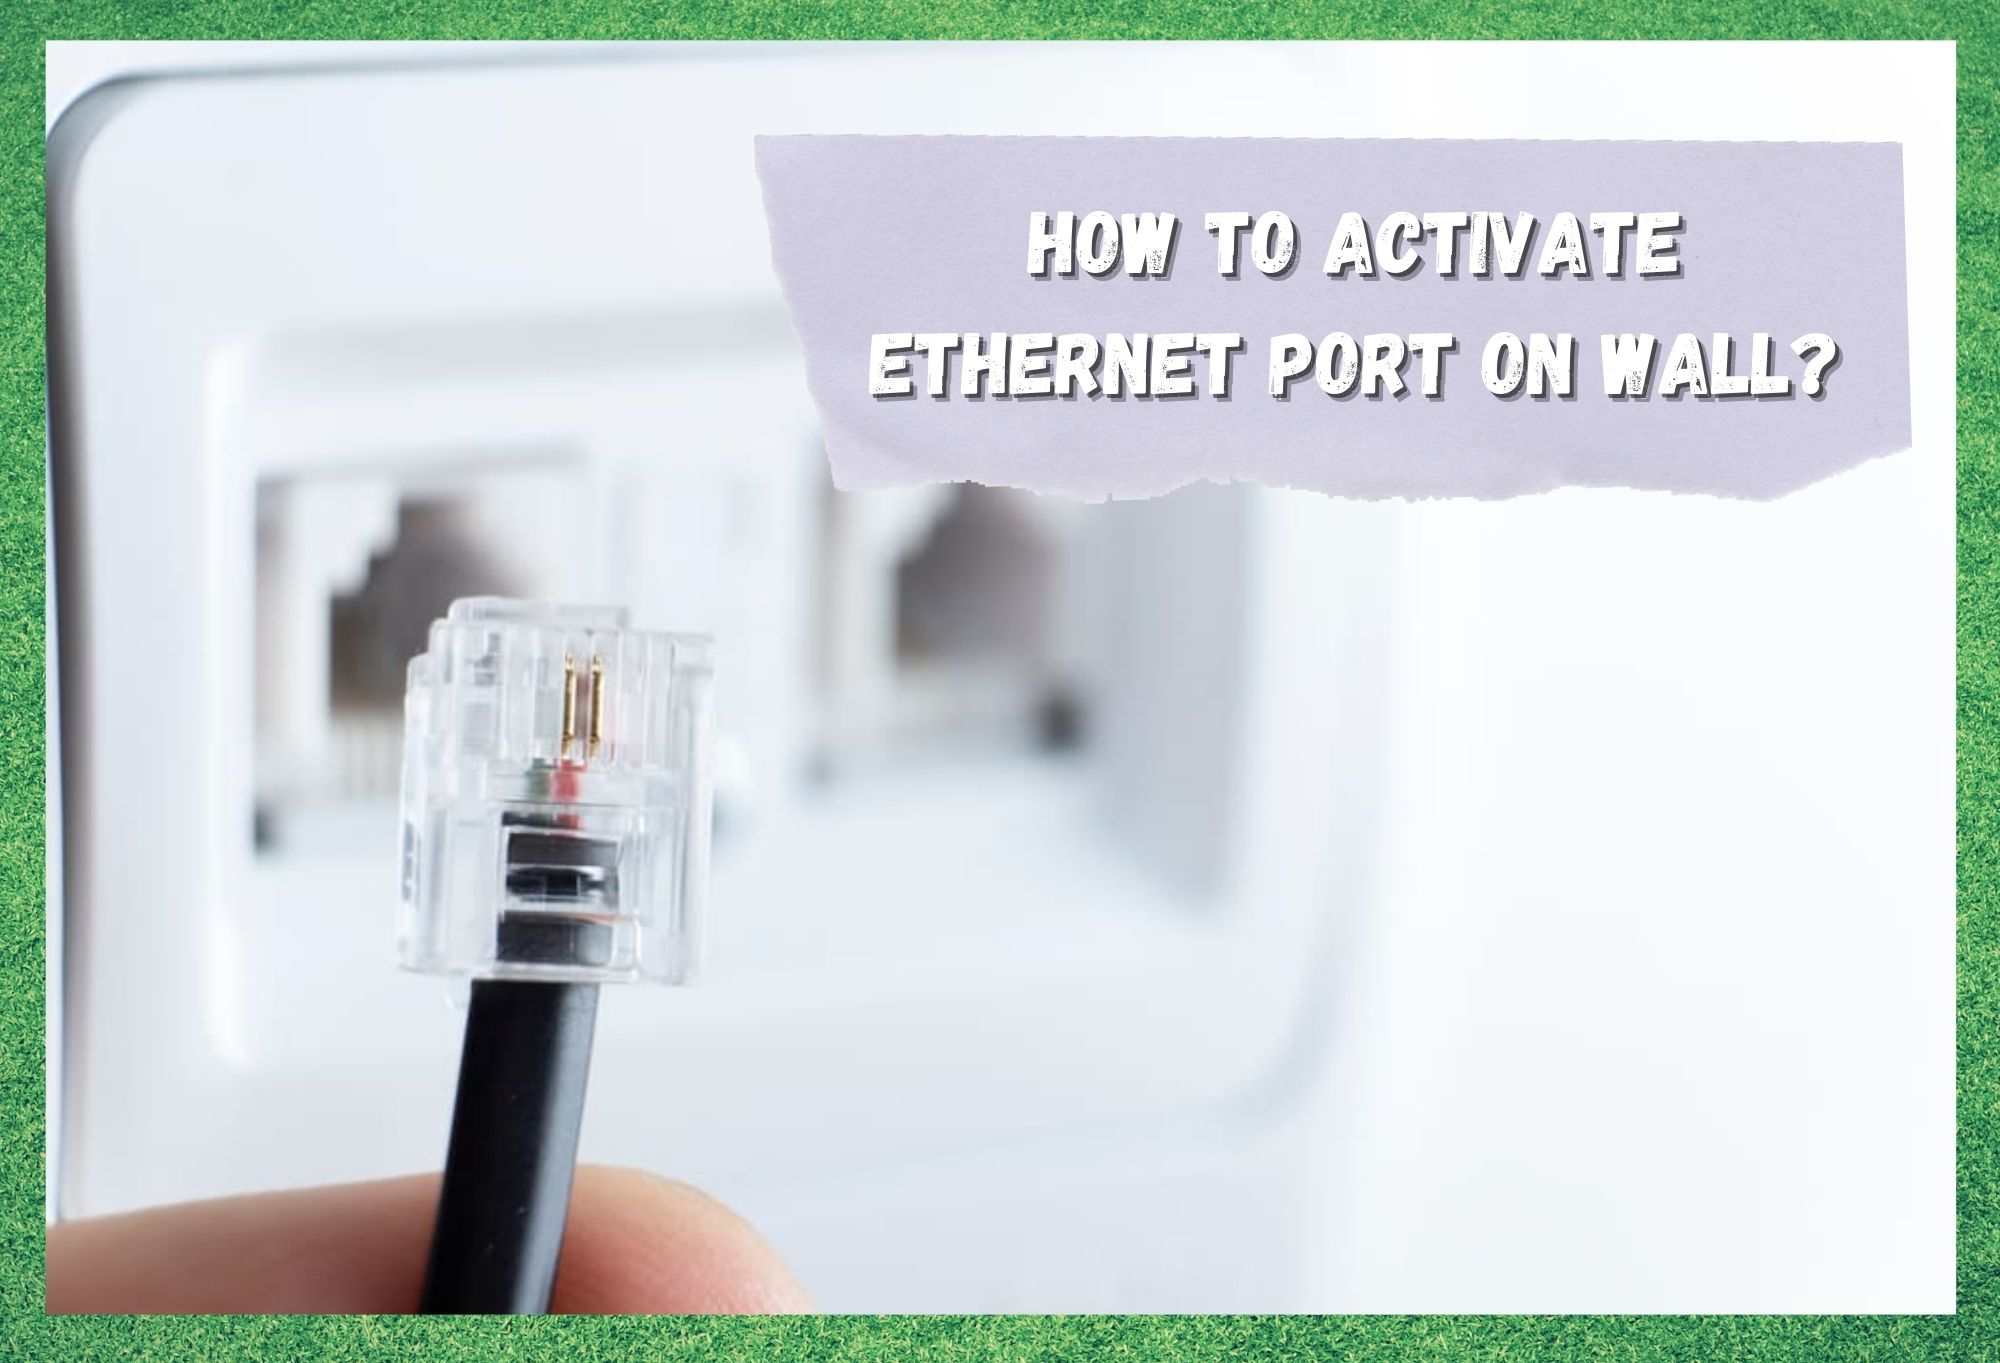 Hoe Ethernet-poort op de muur activeren?